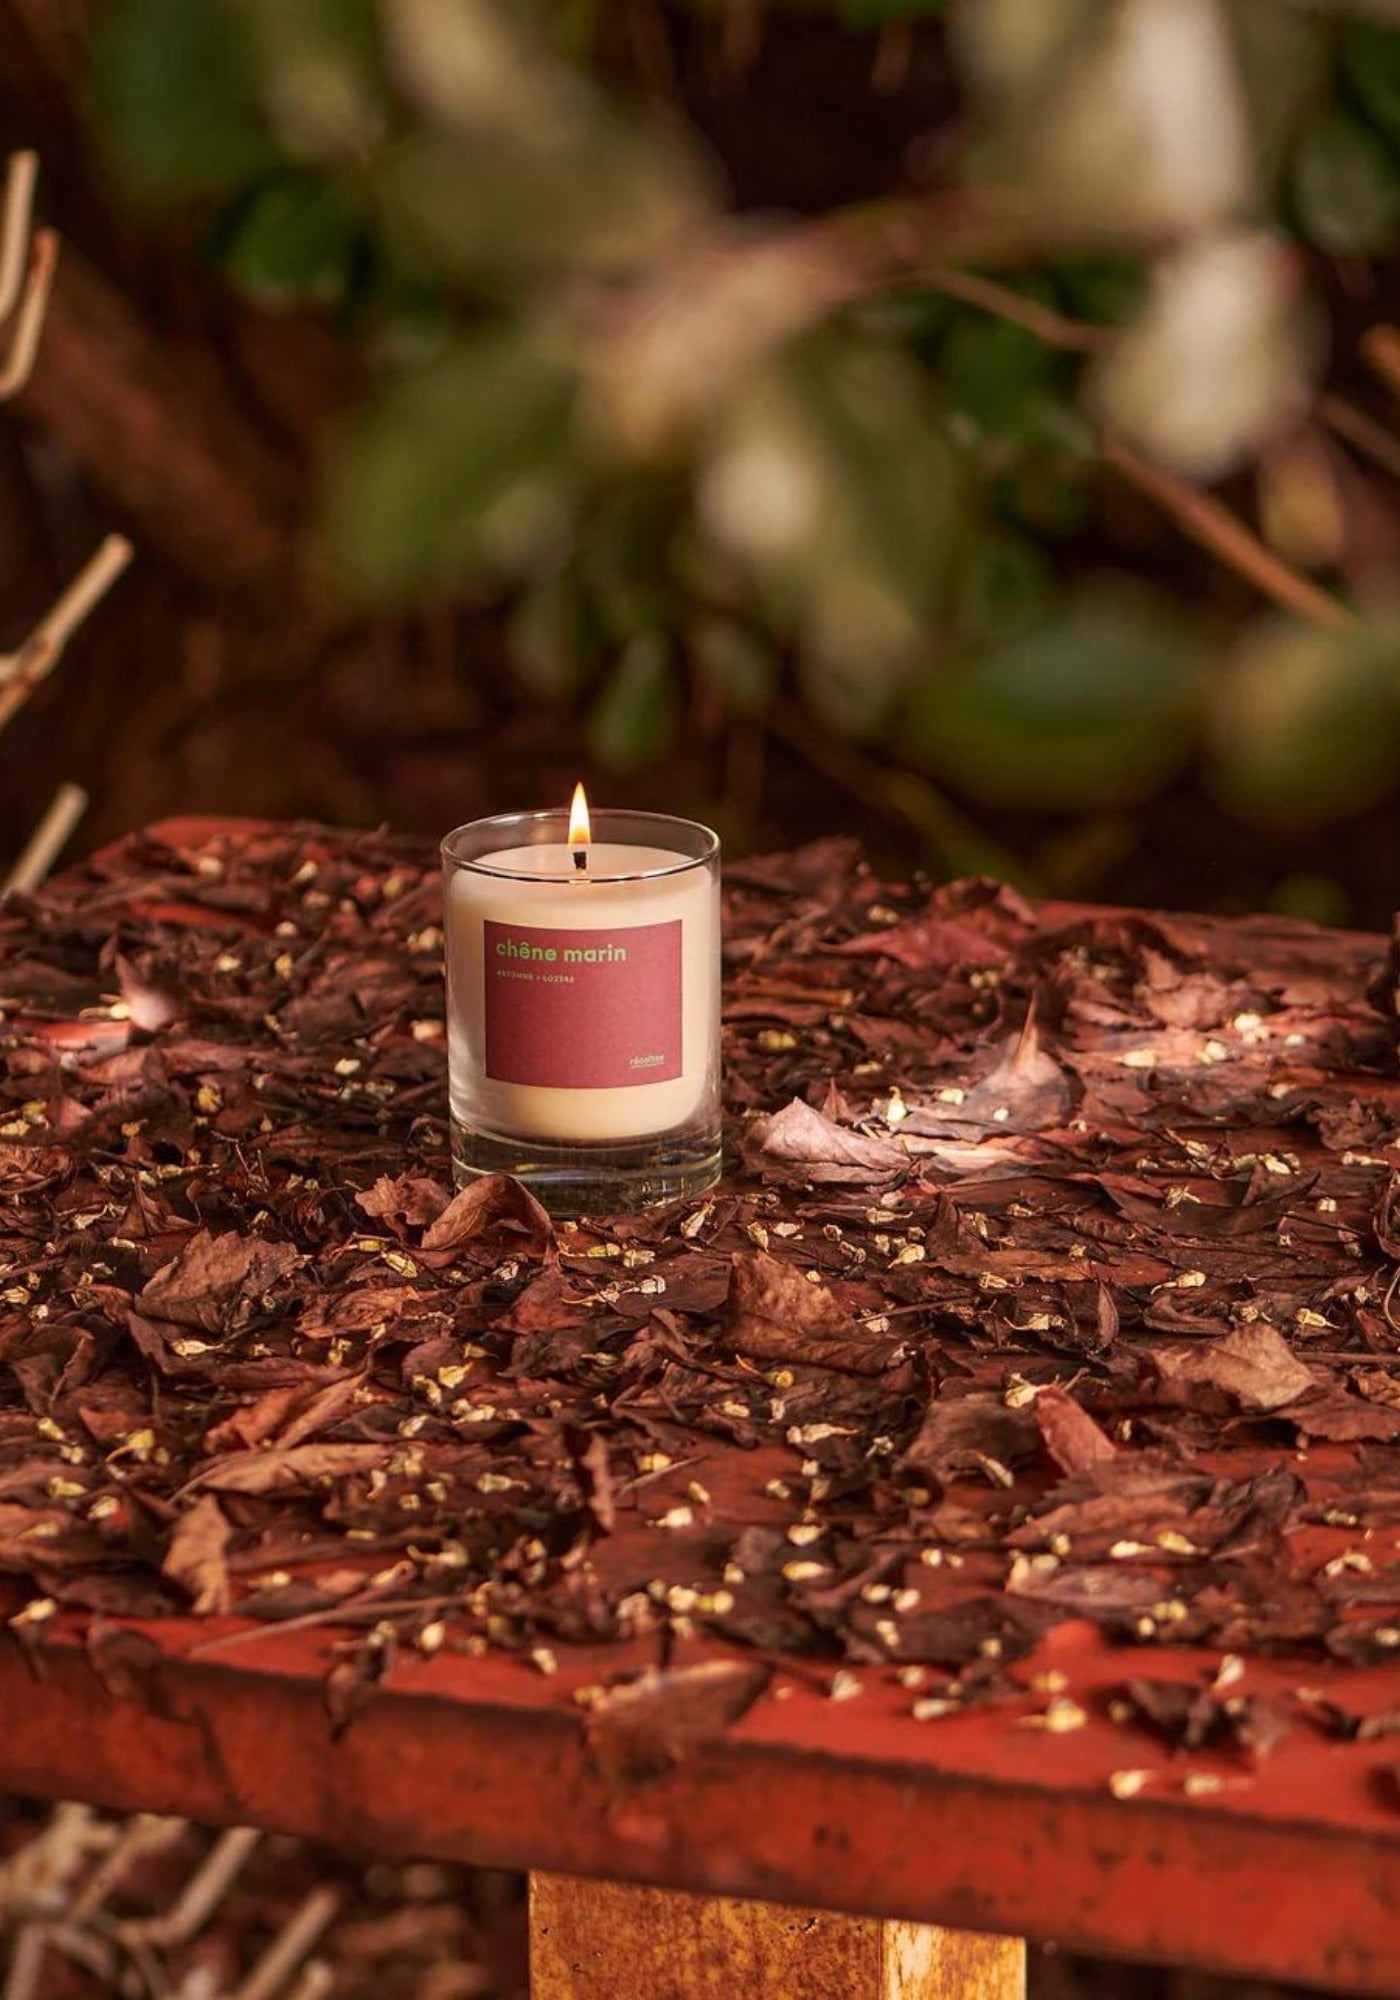 La bougie parfumée chêne marin de chez Récoltes est allumée et posée sur une table en bois remplie de feuilles mortes